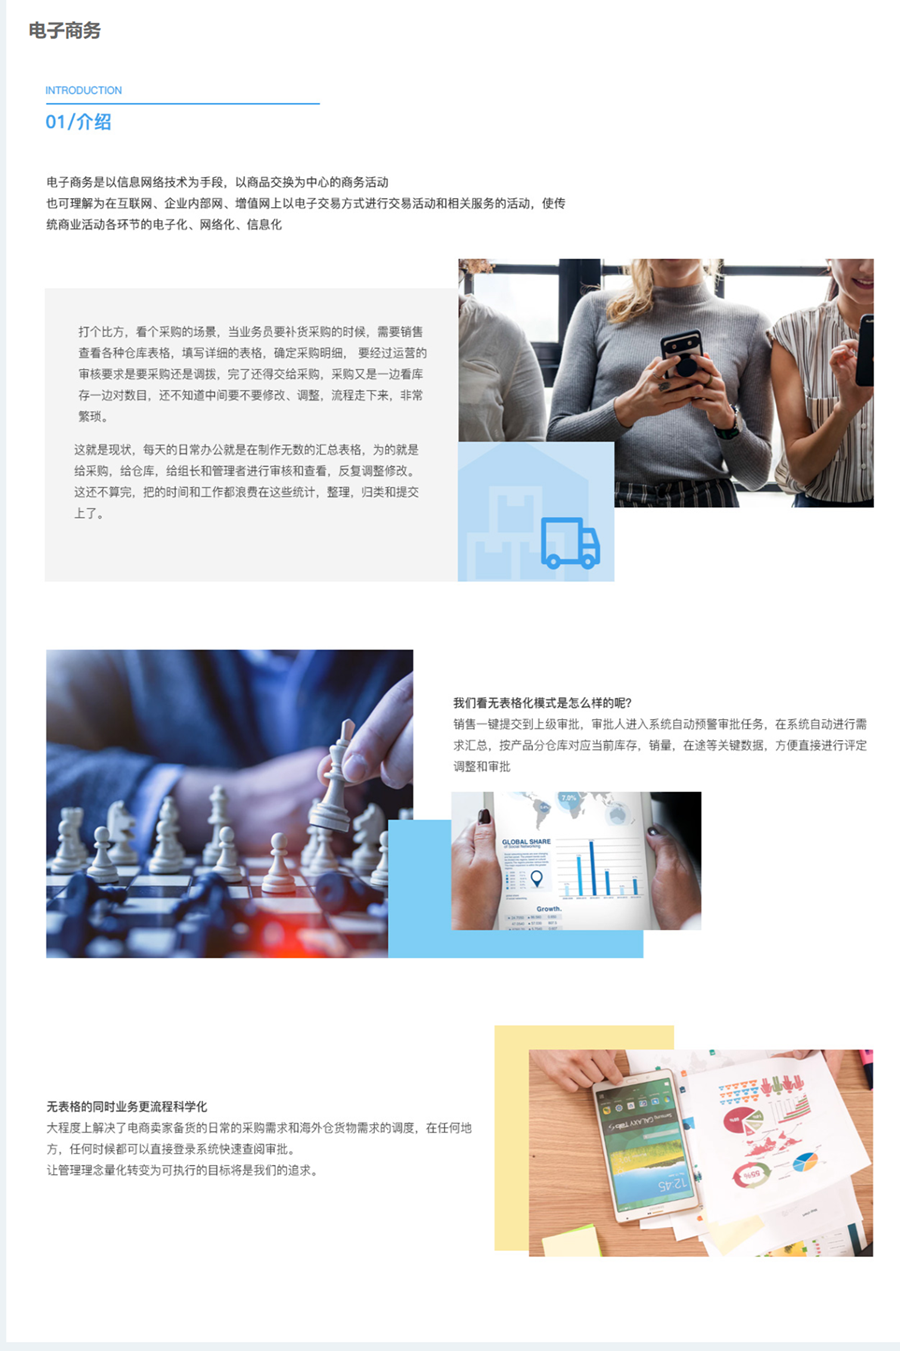 电子商务 - 产品与解决方案 - 知达客.png